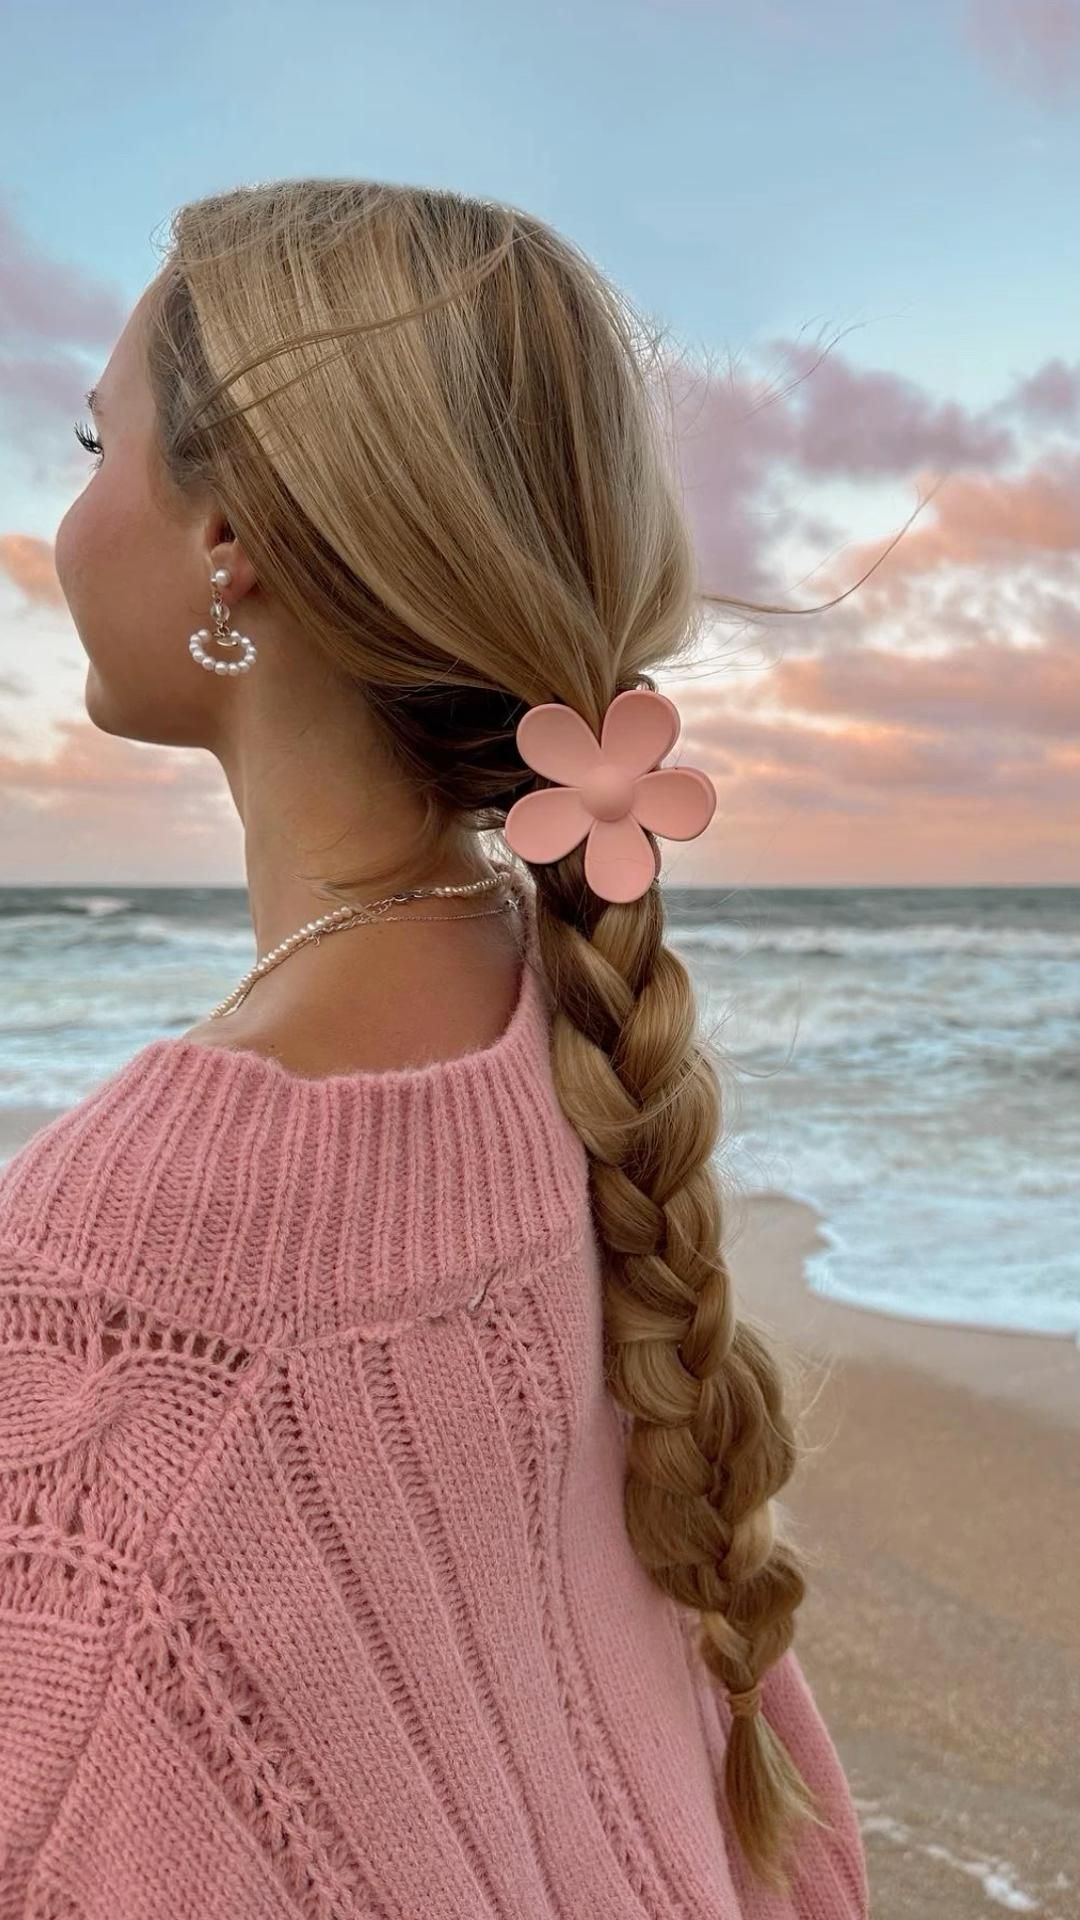 Cute Hairstyle To Beach